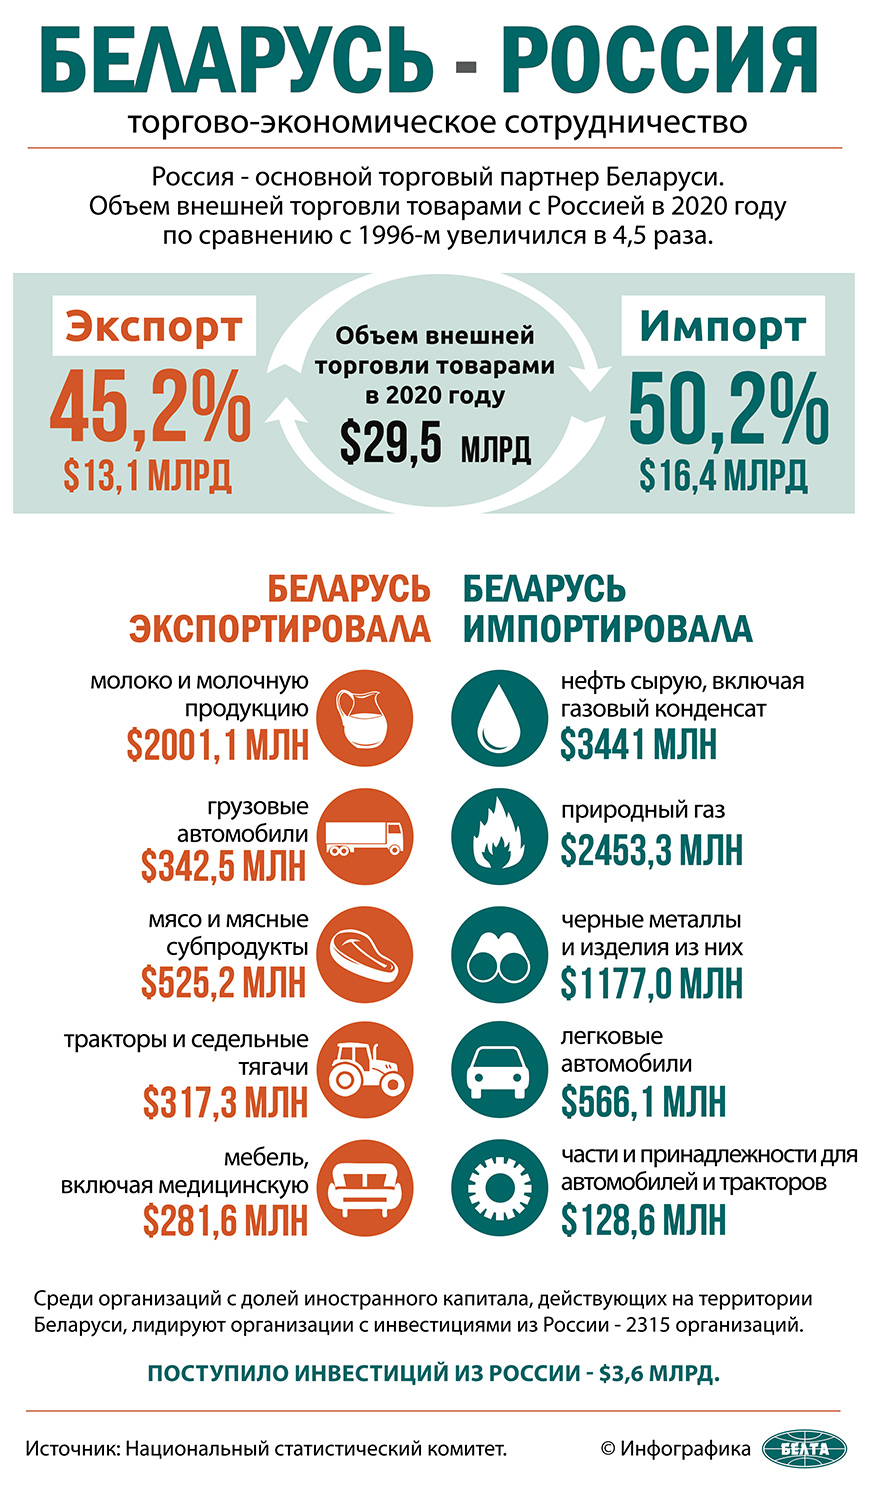 Беларусь - Россия: торгово-экономическое сотрудничество